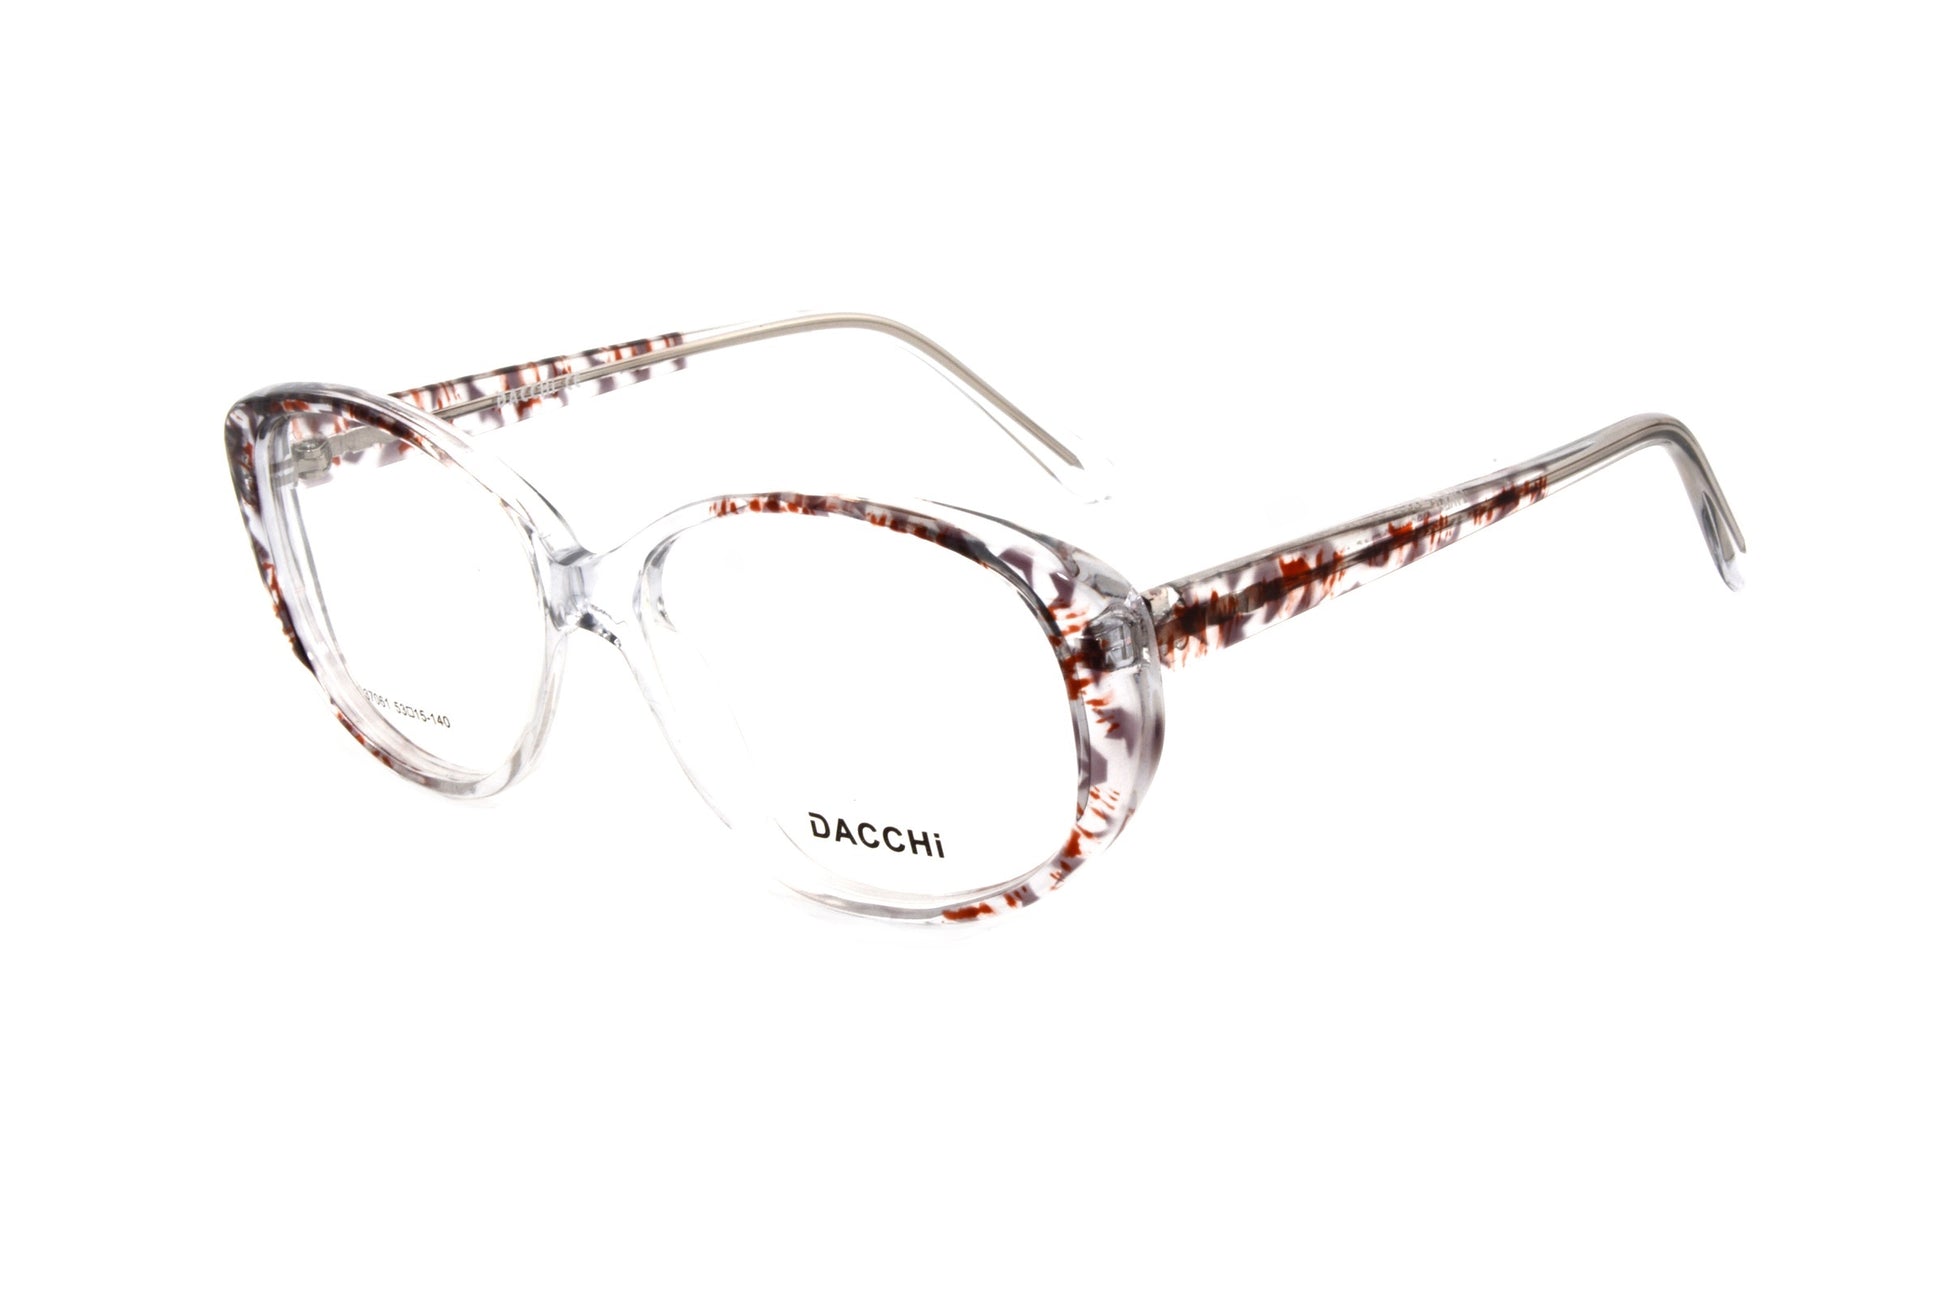 Dacchi eyewear 37061 C634